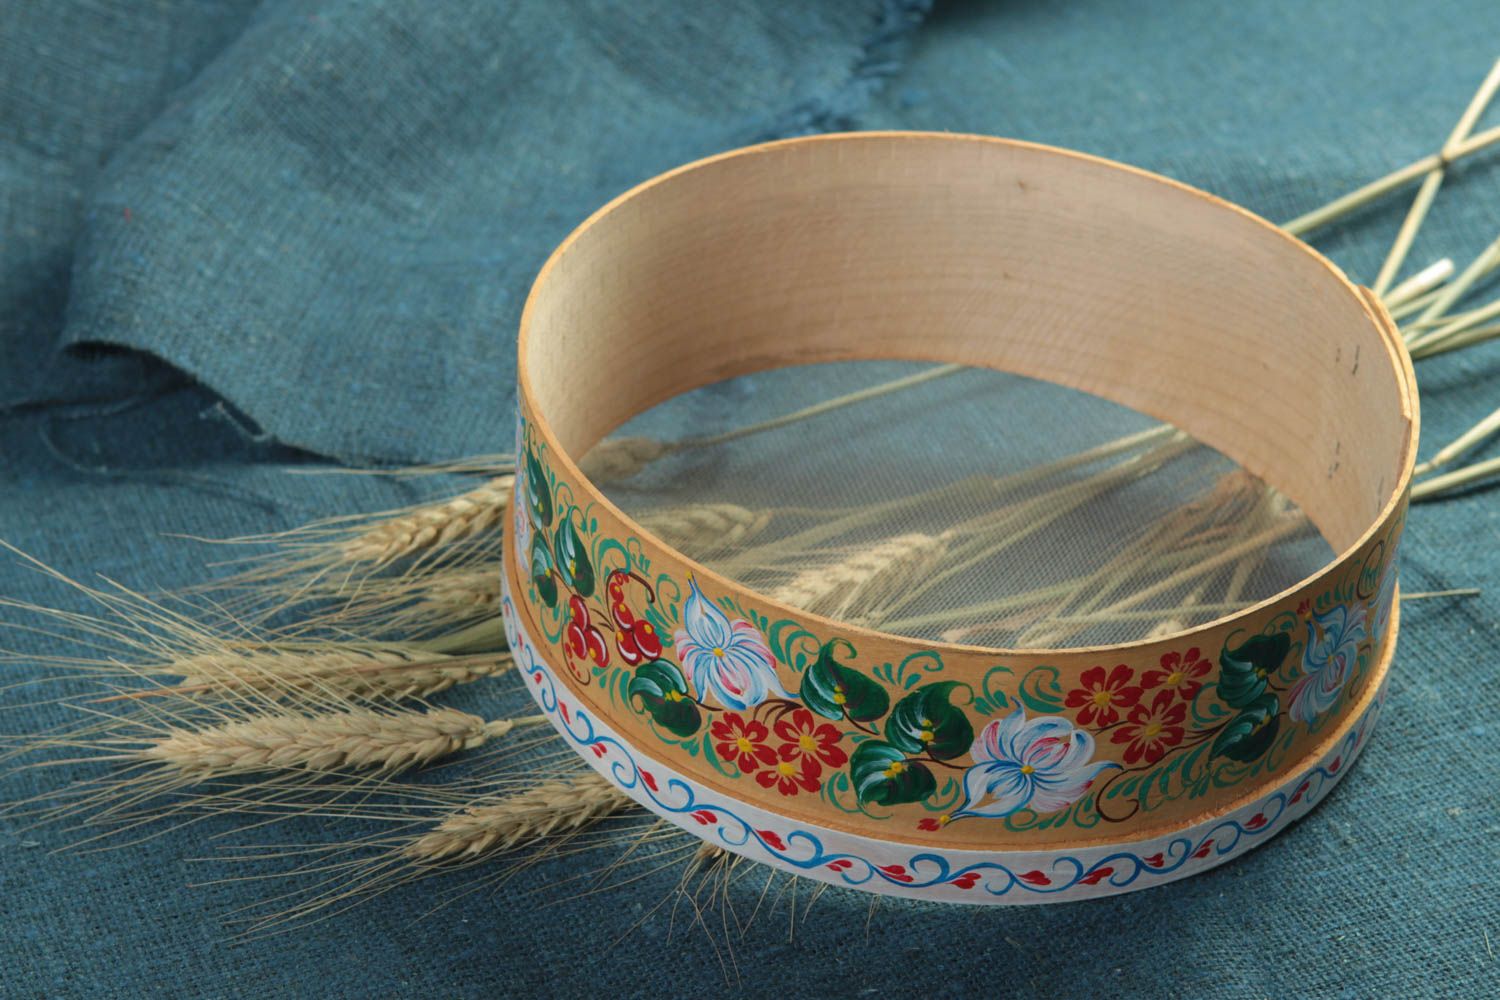 Handmade decorative wooden sieve kitchen accessories designs gift ideas photo 1